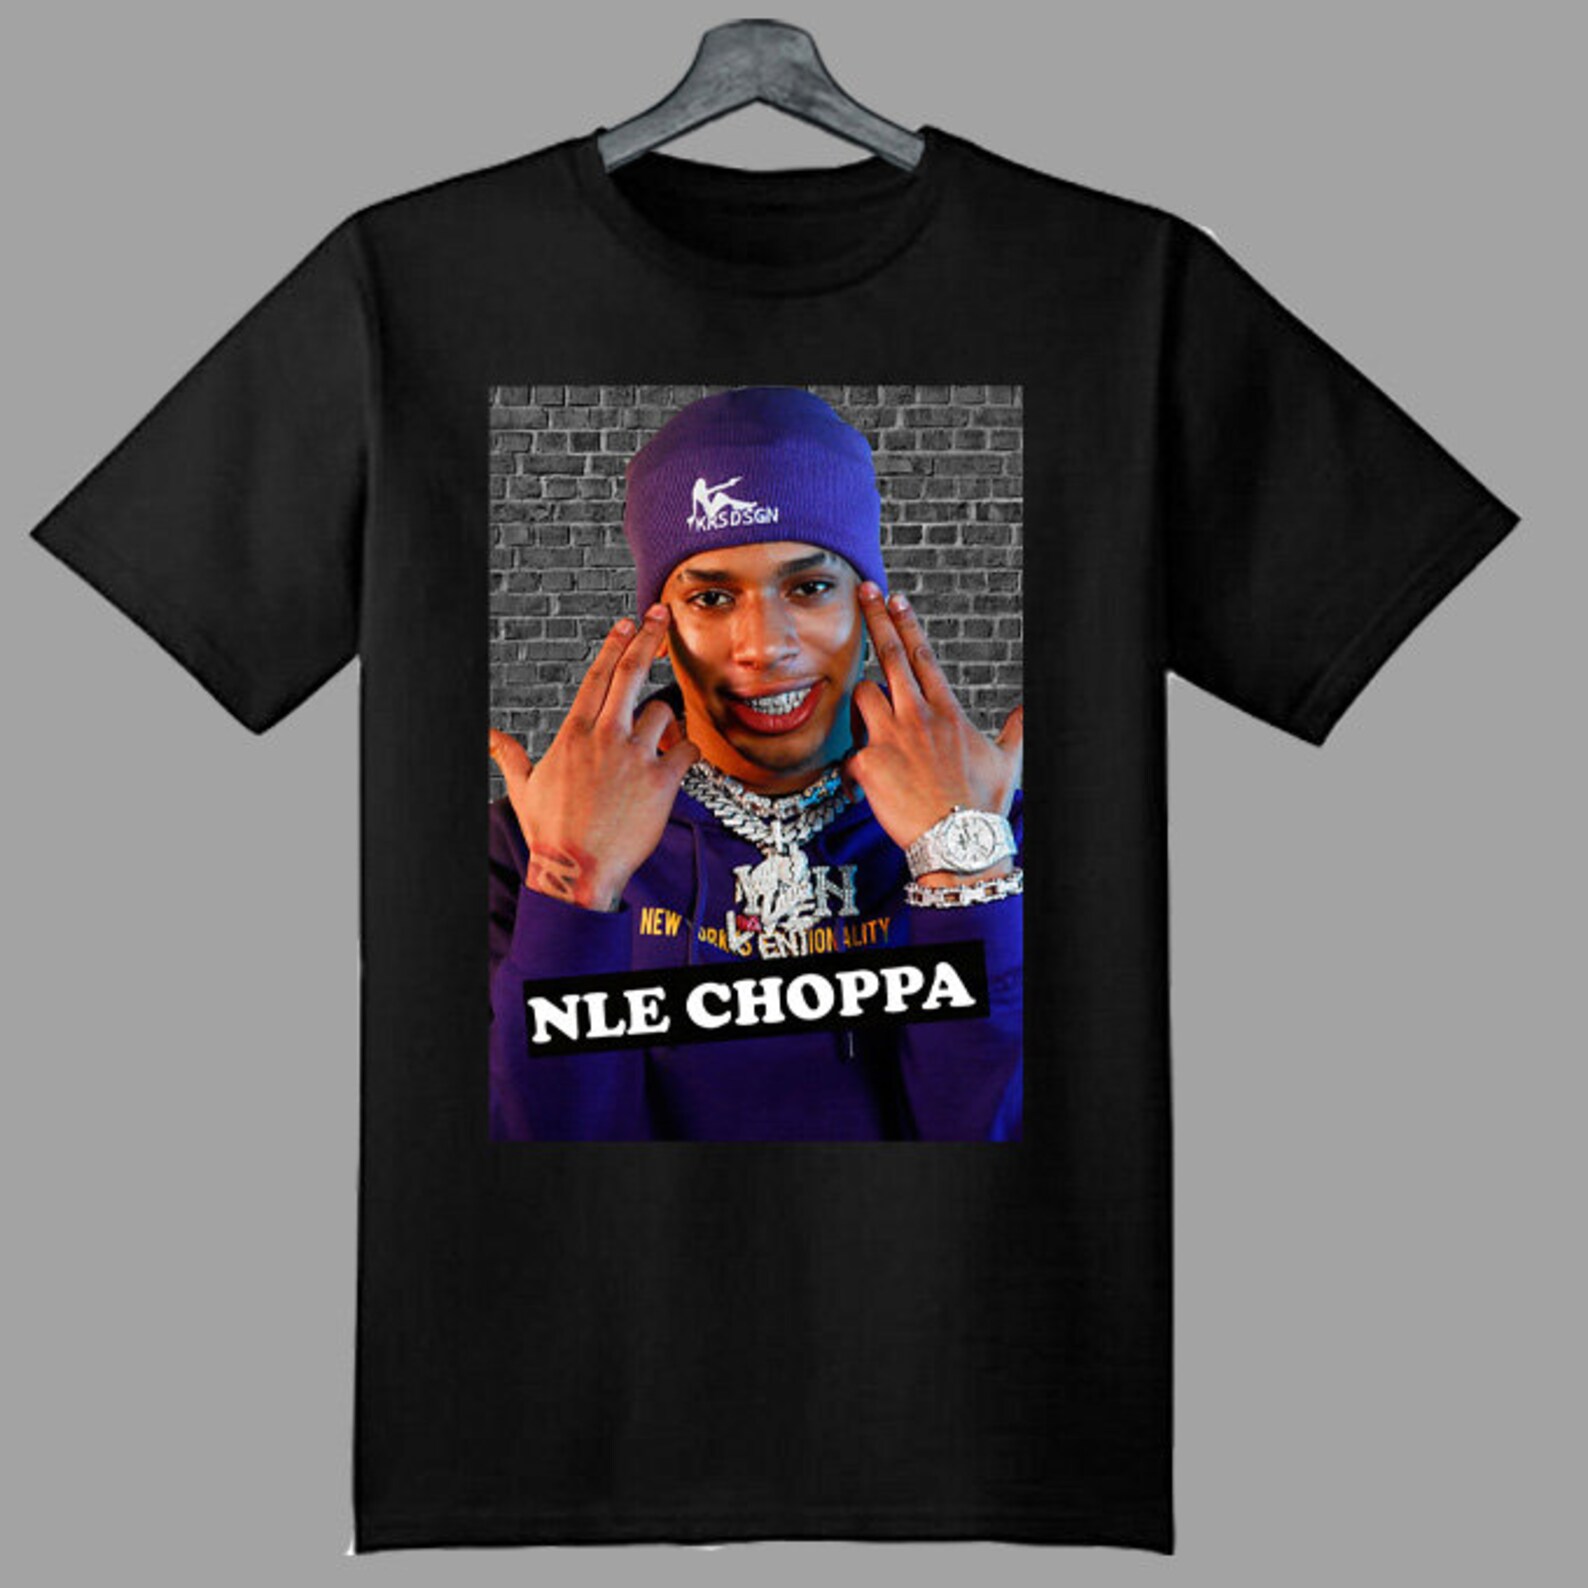 NLE choppa tshirt nle choppa rapper music tshirt nle choppa | Etsy